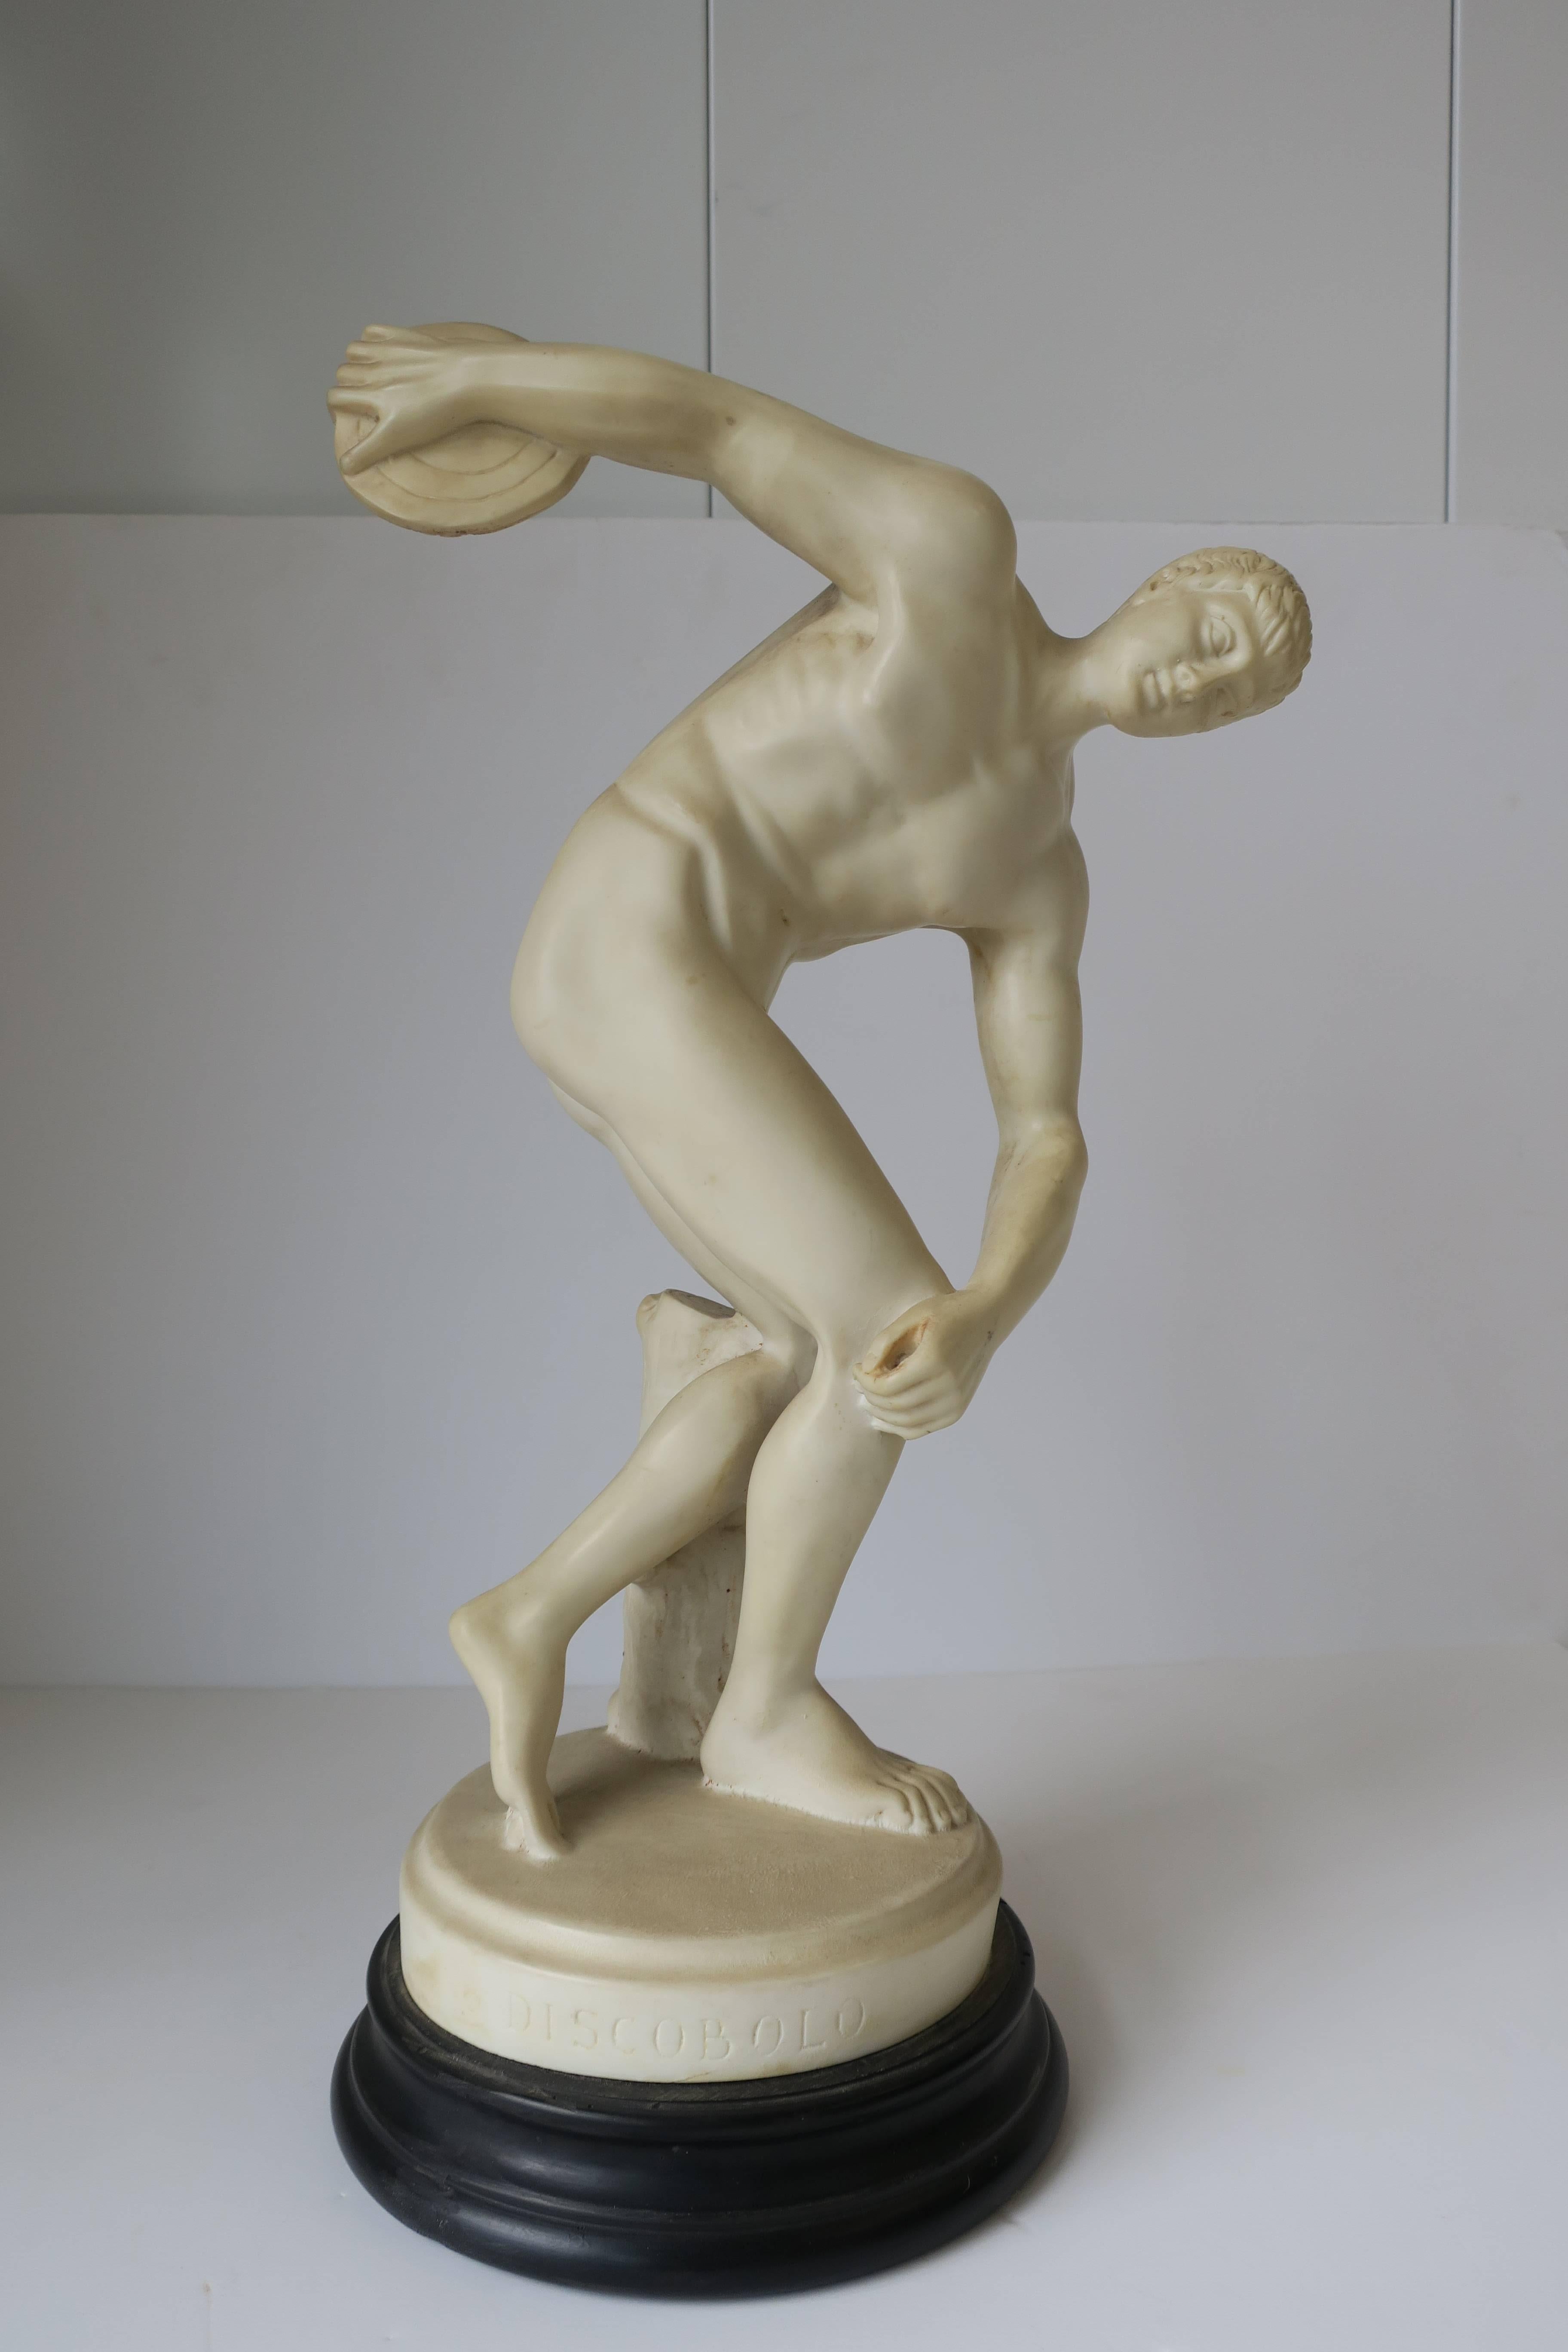 Resin Classic Greek Male Figurative Sculpture of Discobolus